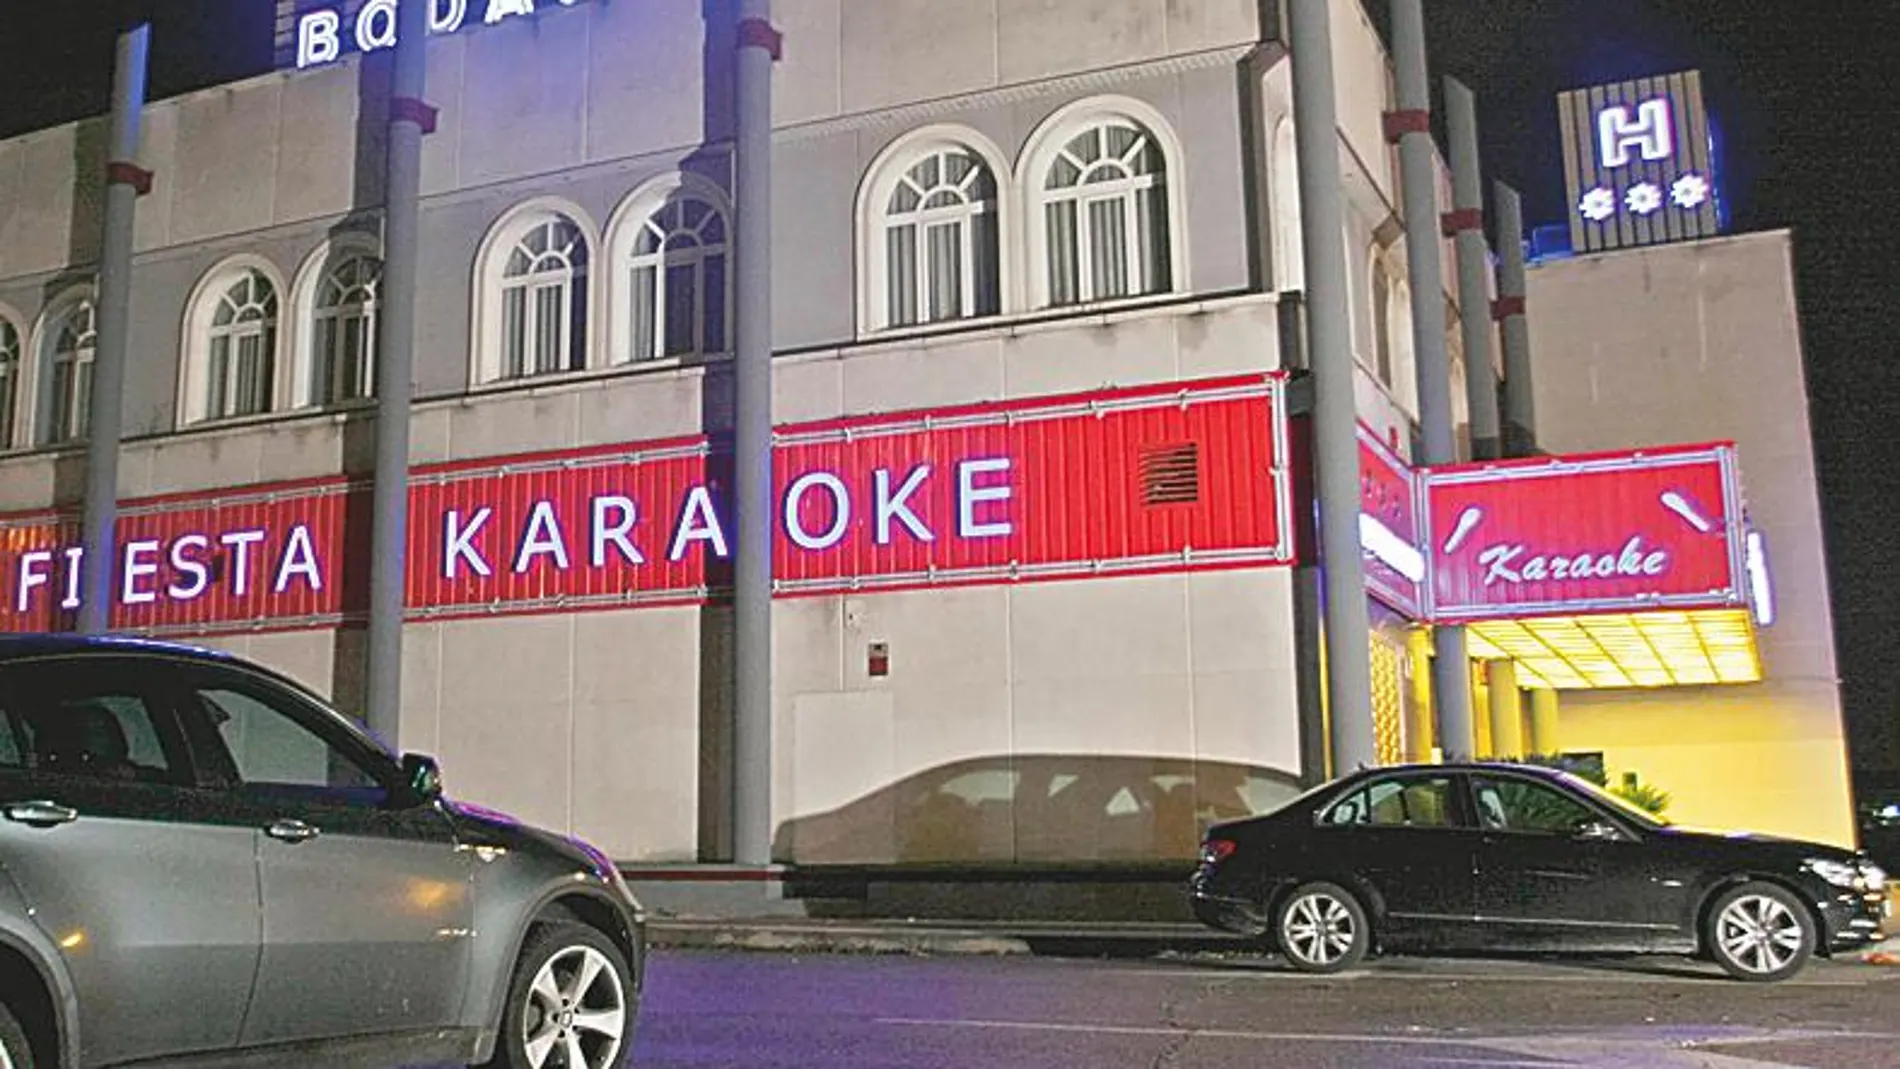 El karaoke «El cielo y el mundo» se encuentra ubicado en Parla, muy cerca de Cobocalleja, el mayor polígono chino de Europa. Los agentes de policía han practicado allí multitud de redadas, pero vuelven a abrir de forma sistemática con apariencia de un local de ocio más